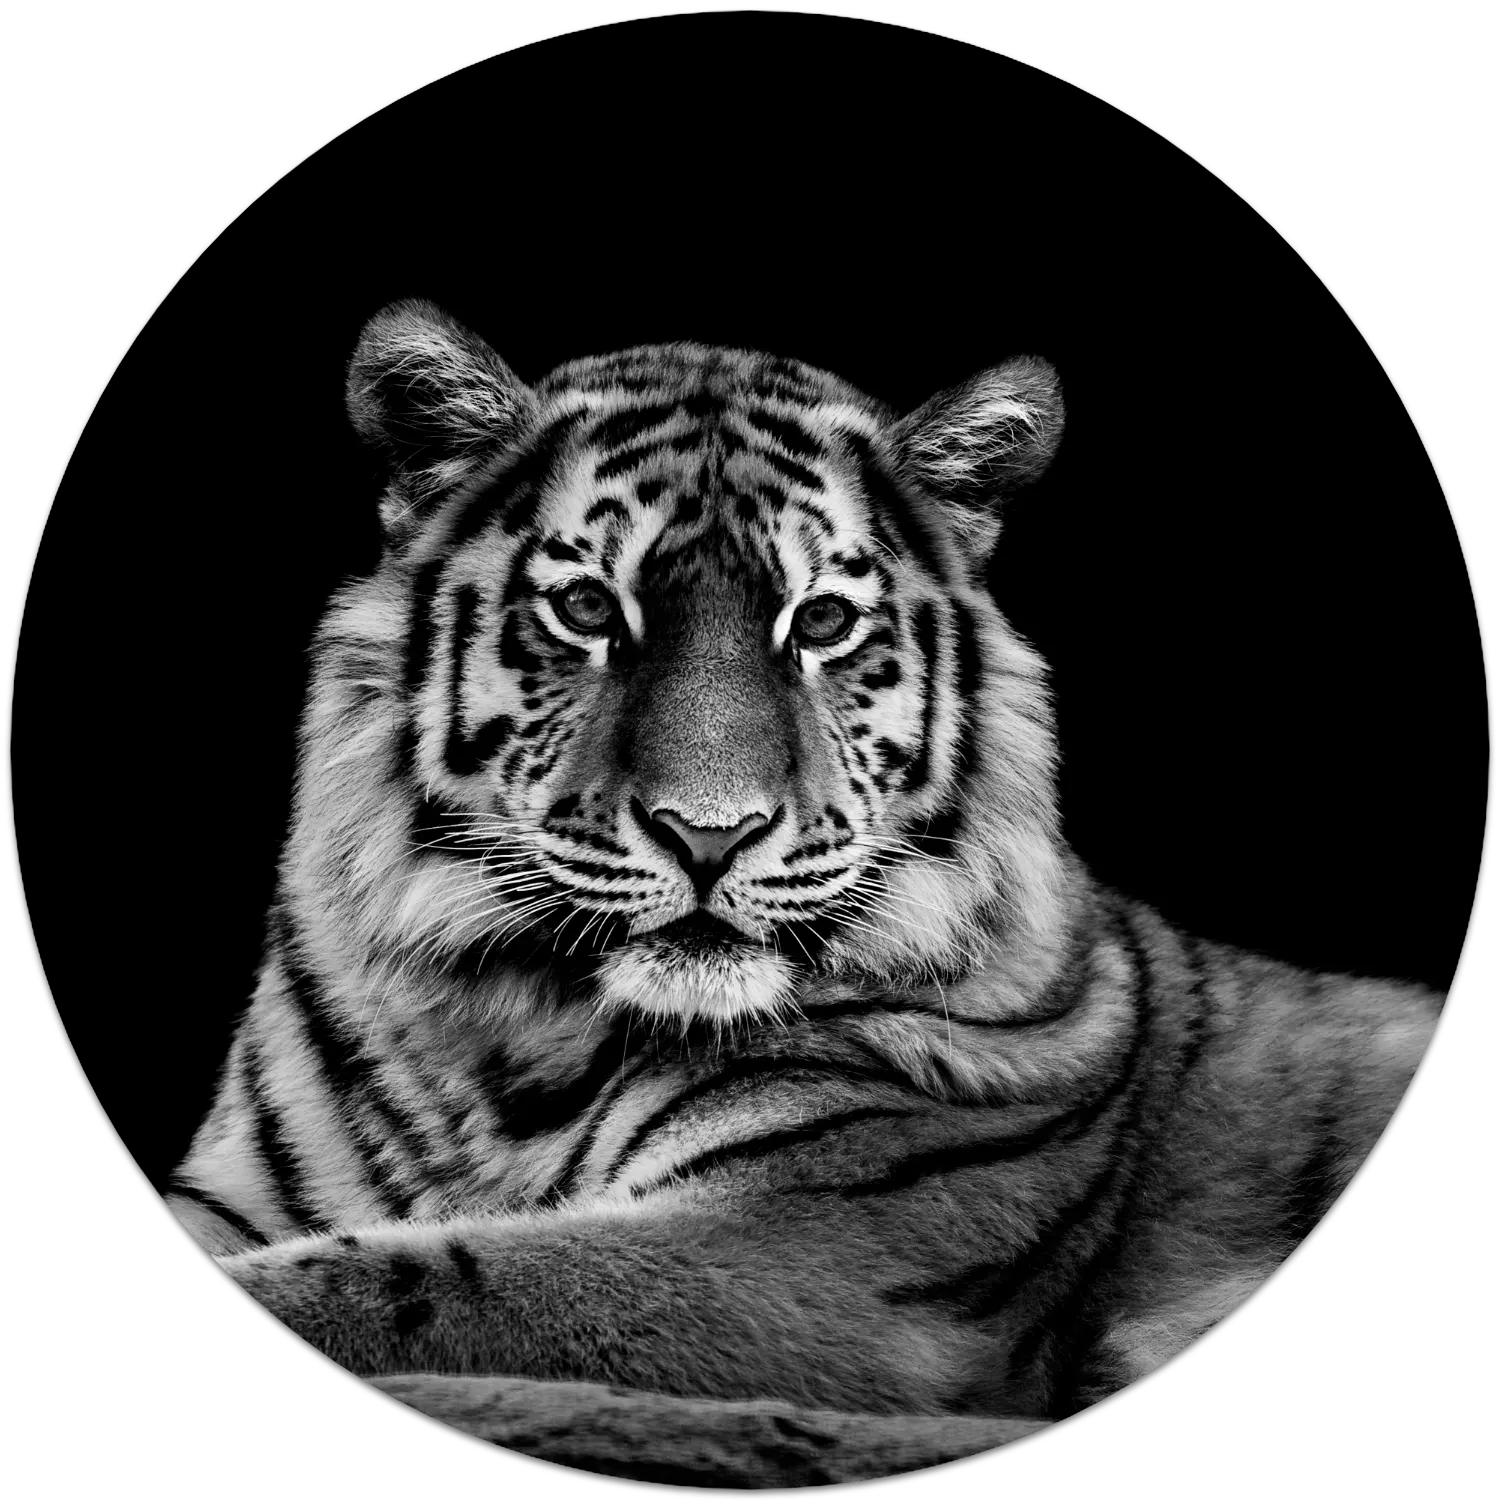 04N4 - The Tiger - Fotokunst Wandcirkel